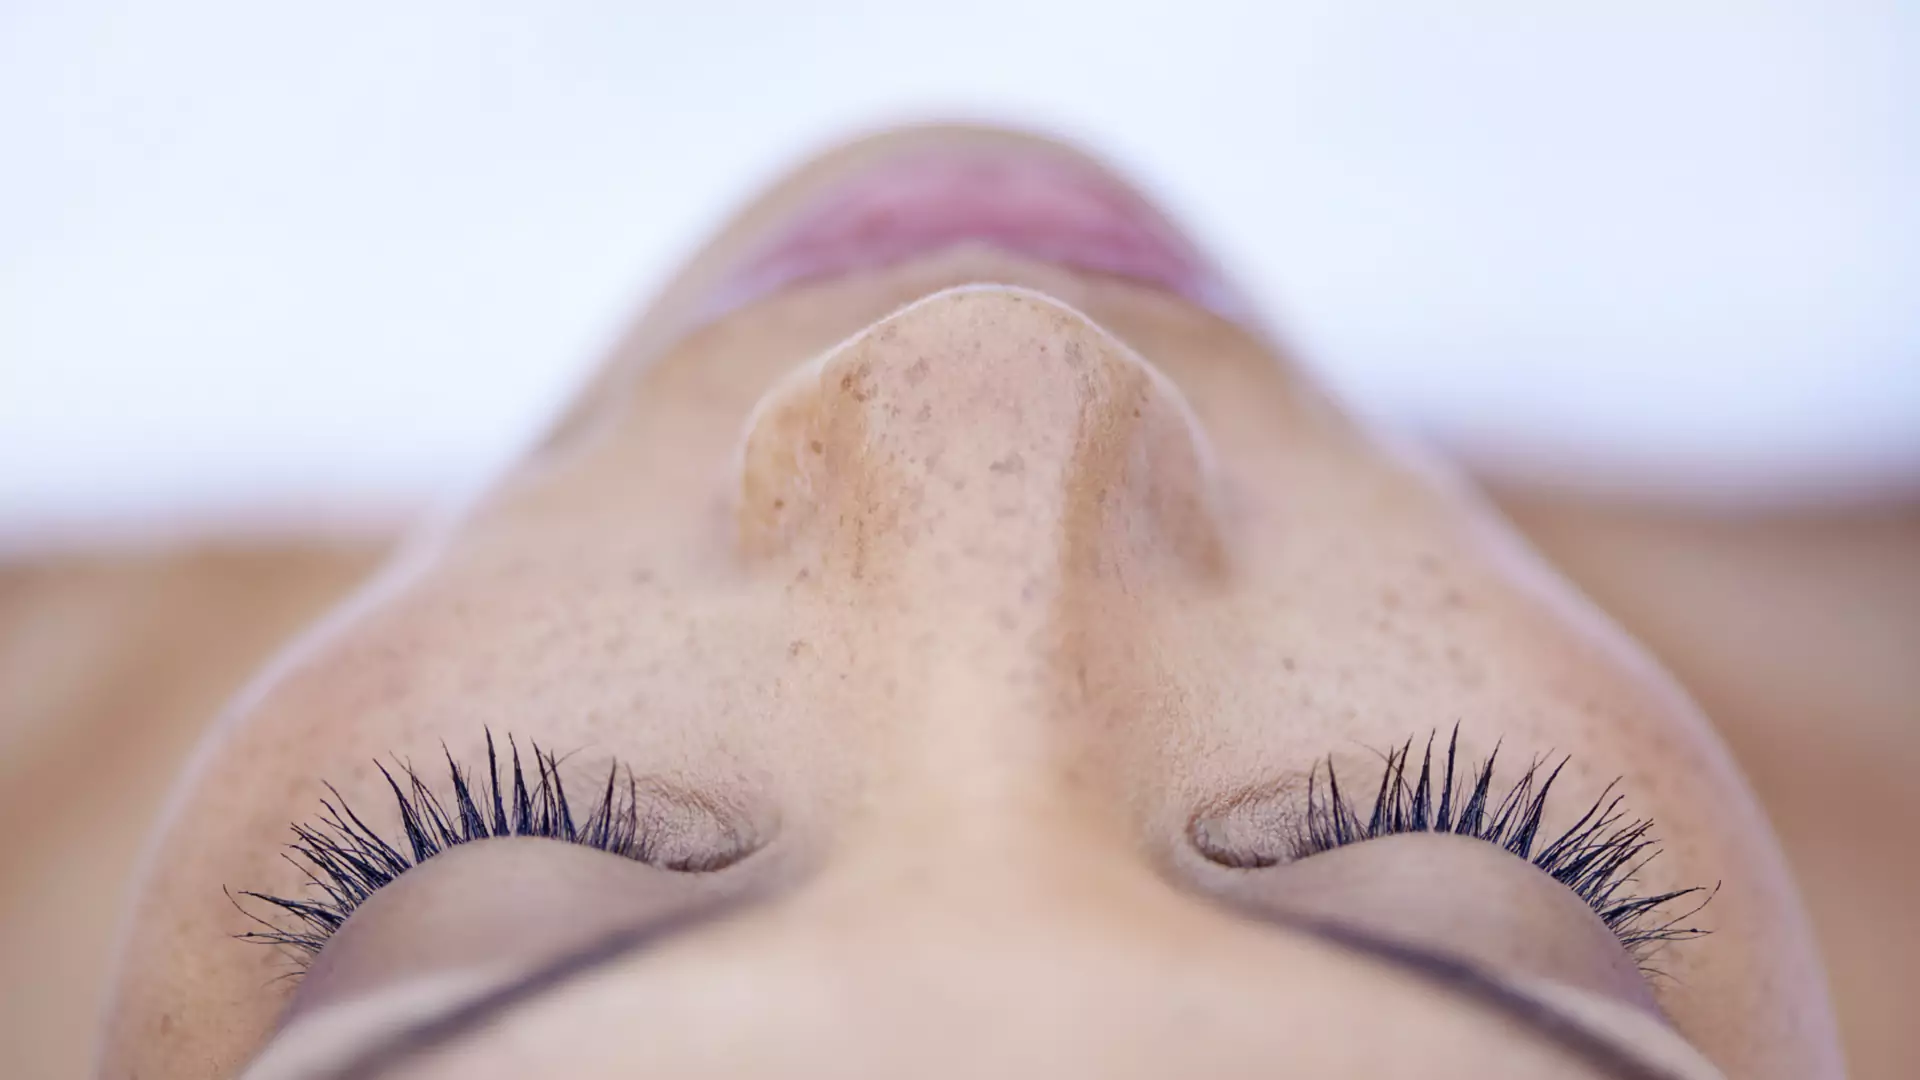 Jak rozpoznać rodzaj skóry? Kosmetolog wskazuje cechy i pomaga dobrać pielęgnację